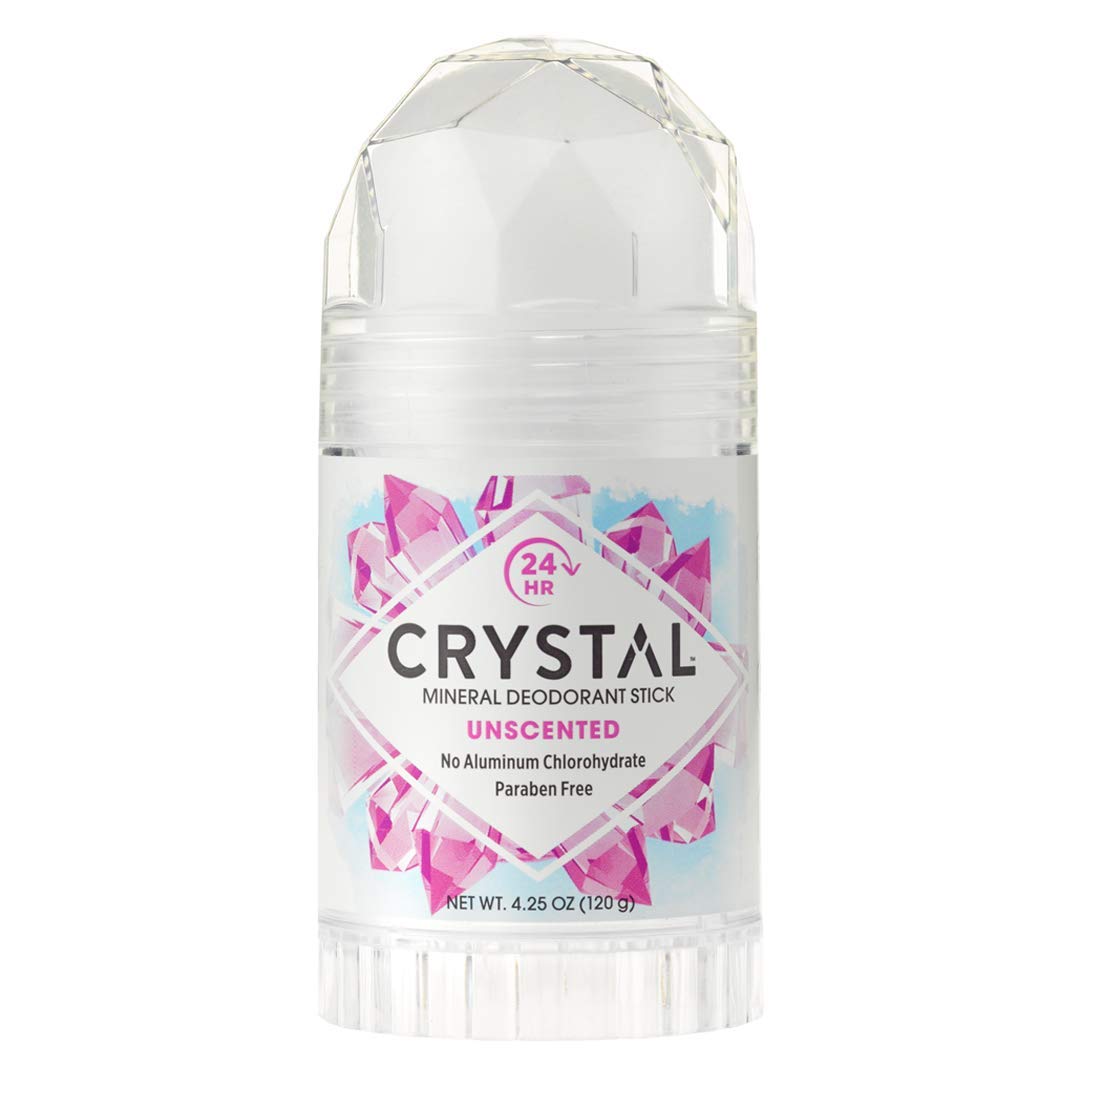 Crystal Deodorant Crystal Body Deodorant Stick